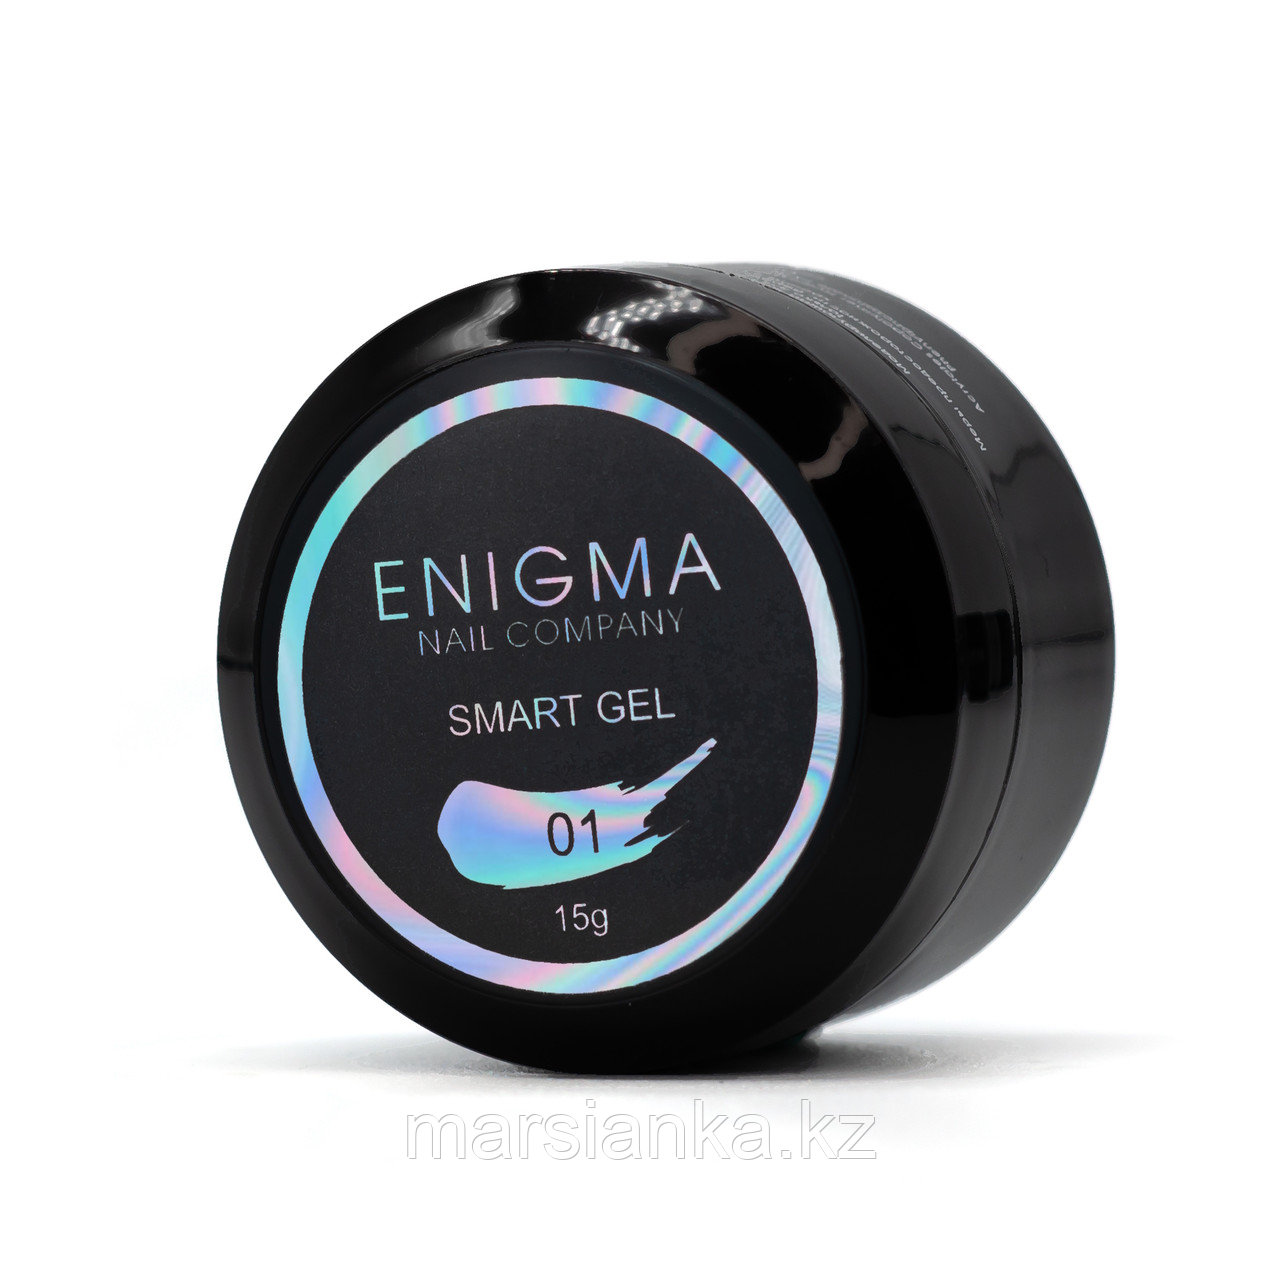 Жидкий бескислотный гель Enigma Smart gel #01, 15мл